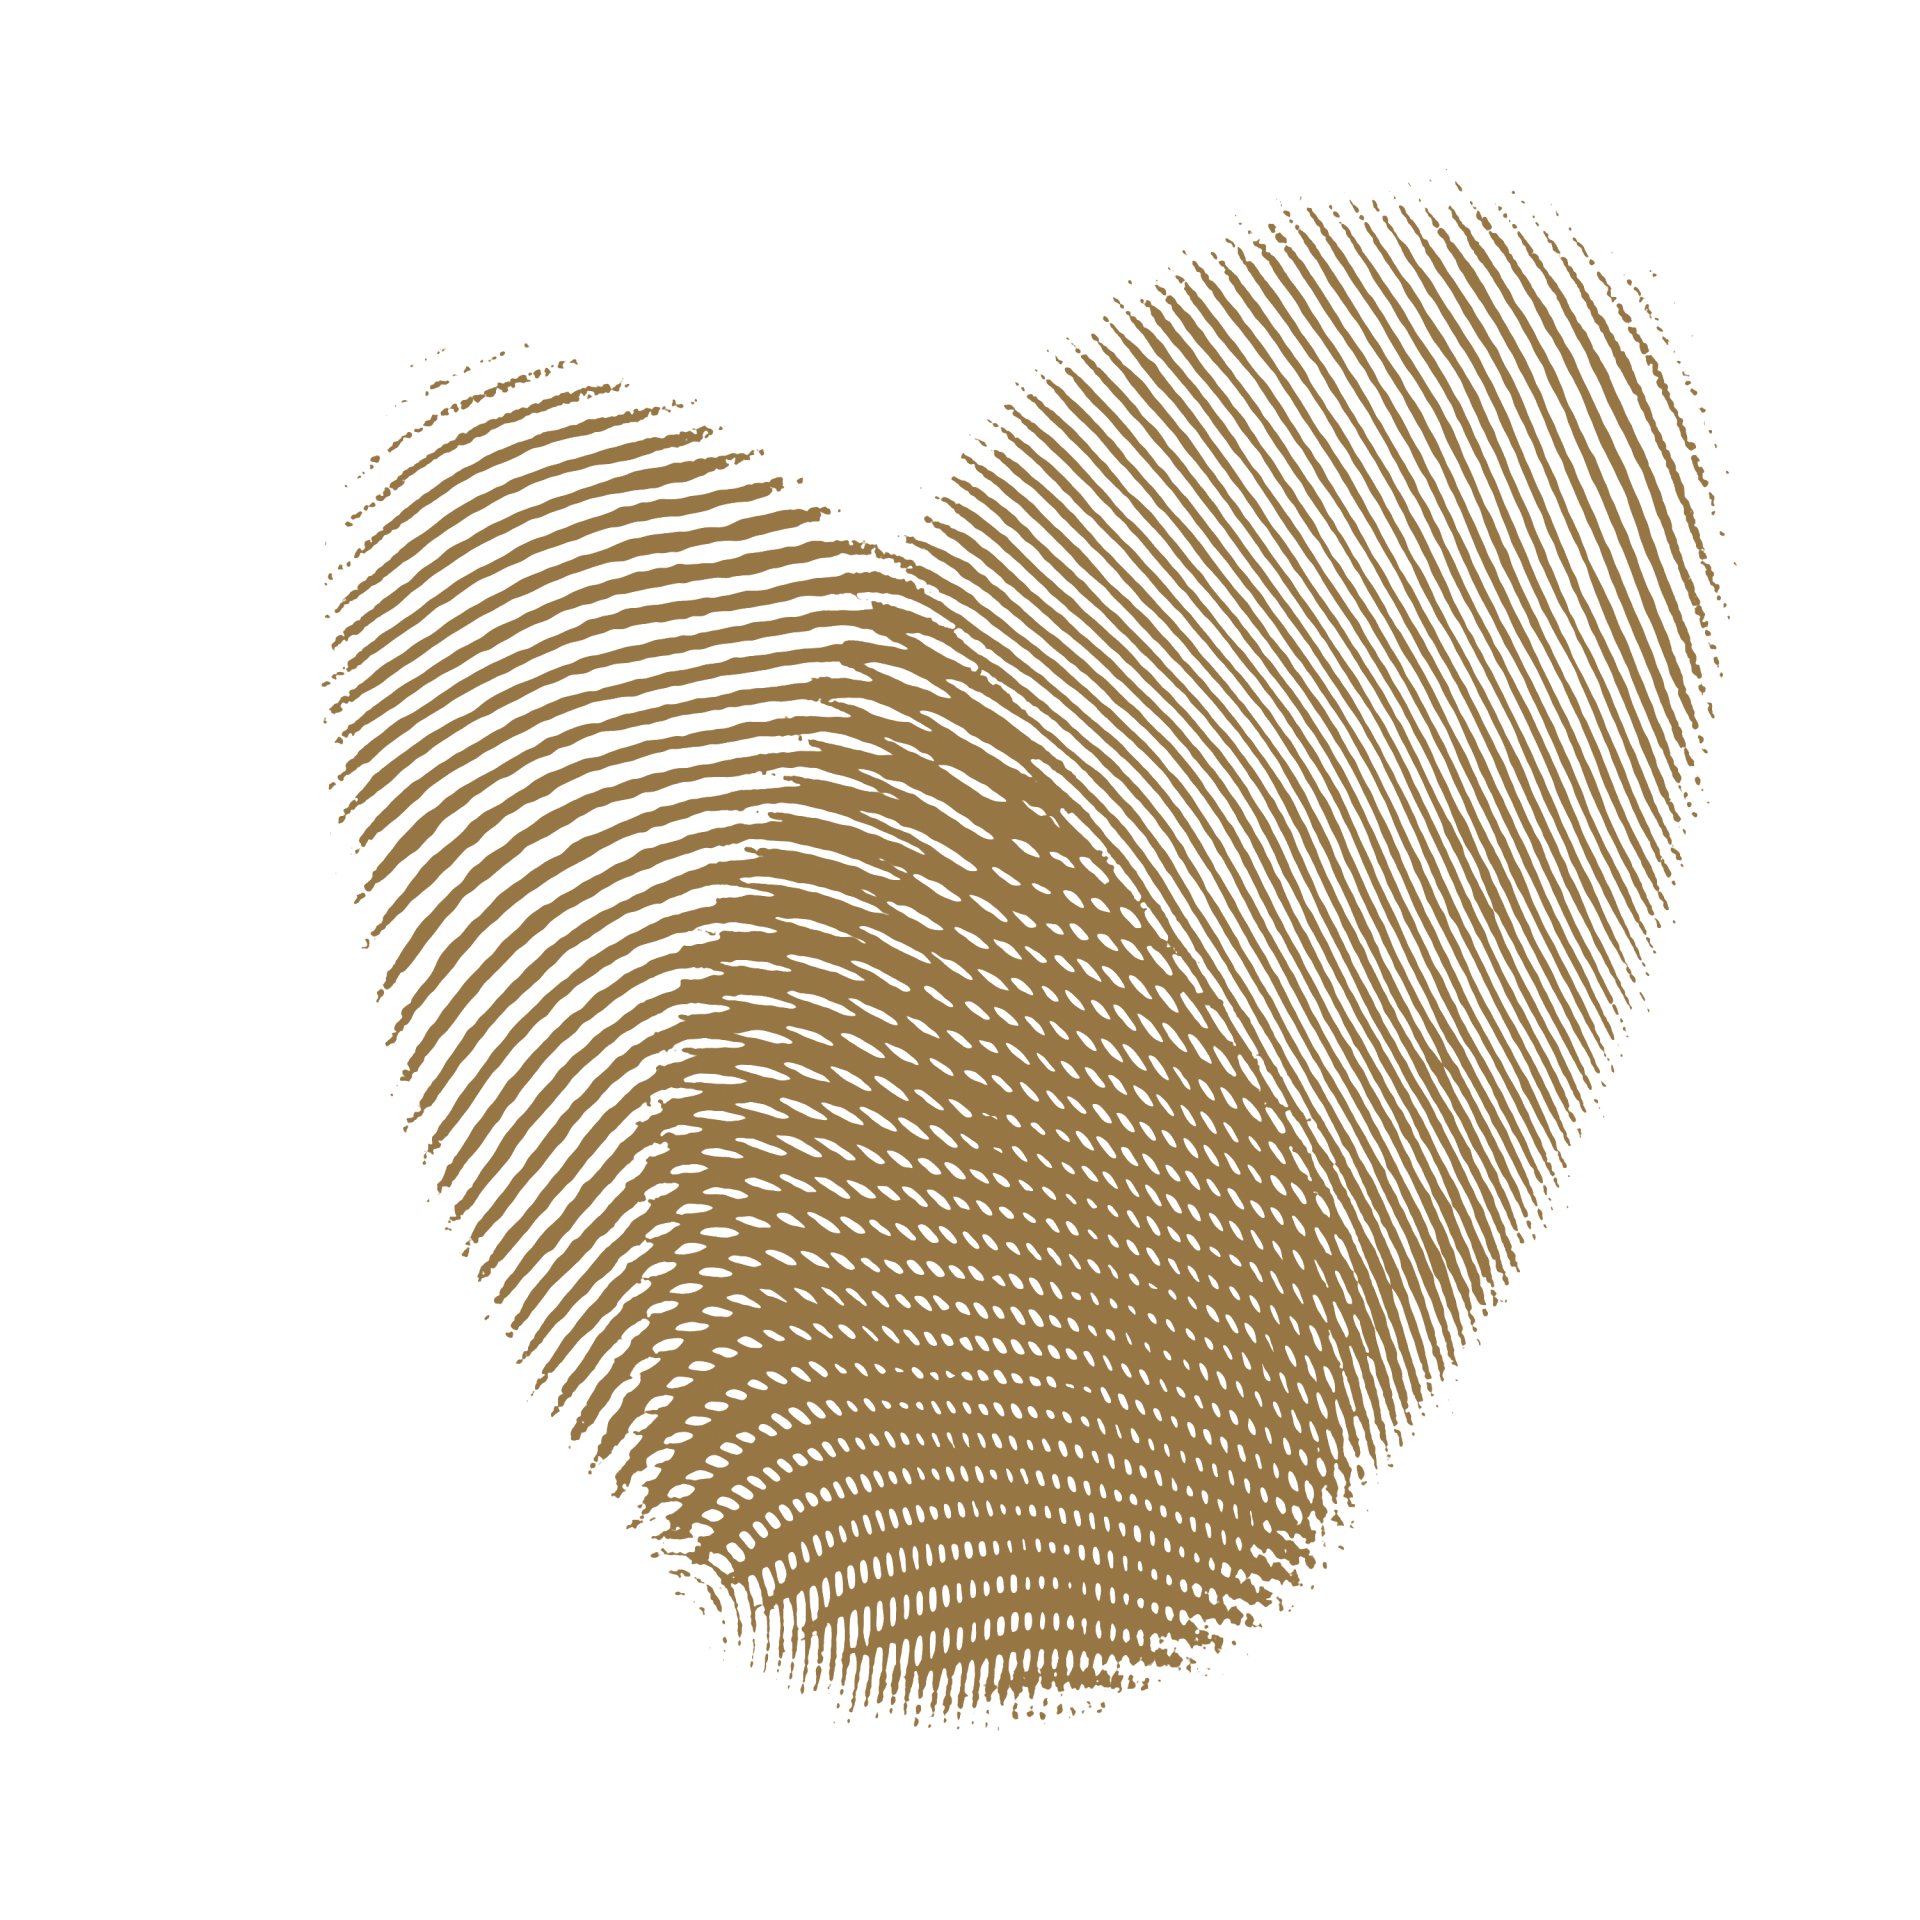 Fingerprint Heart PNG Free Stock Photo - Public Domain Pictures